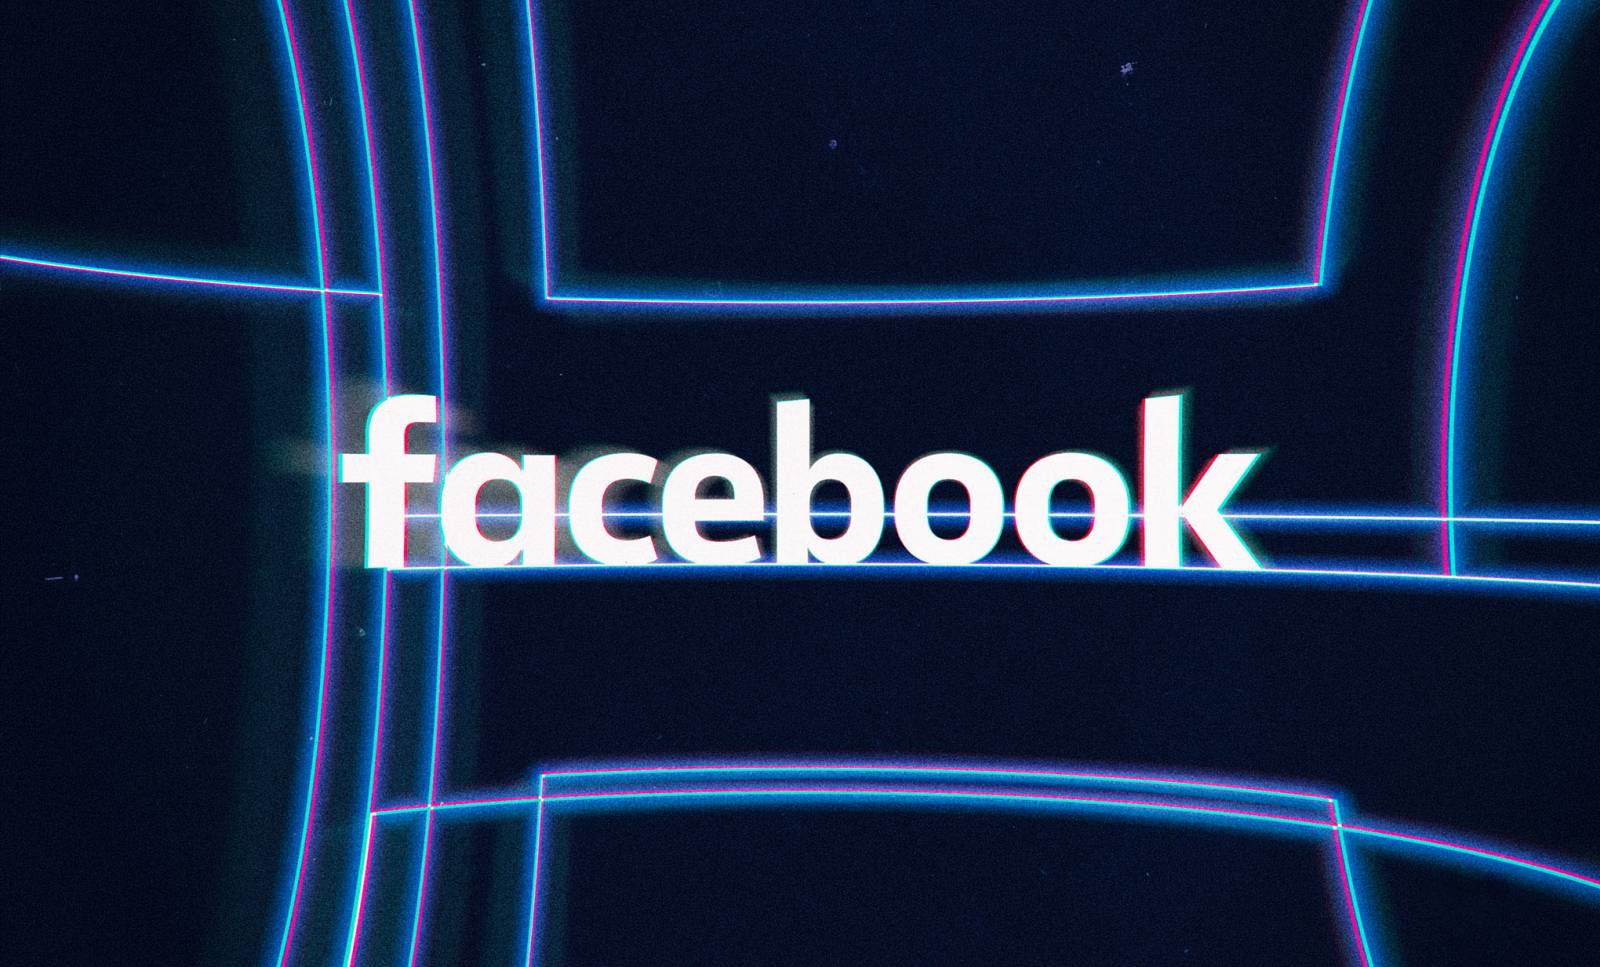 Nueva actualización de Facebook ofrecida hoy para teléfonos y tabletas